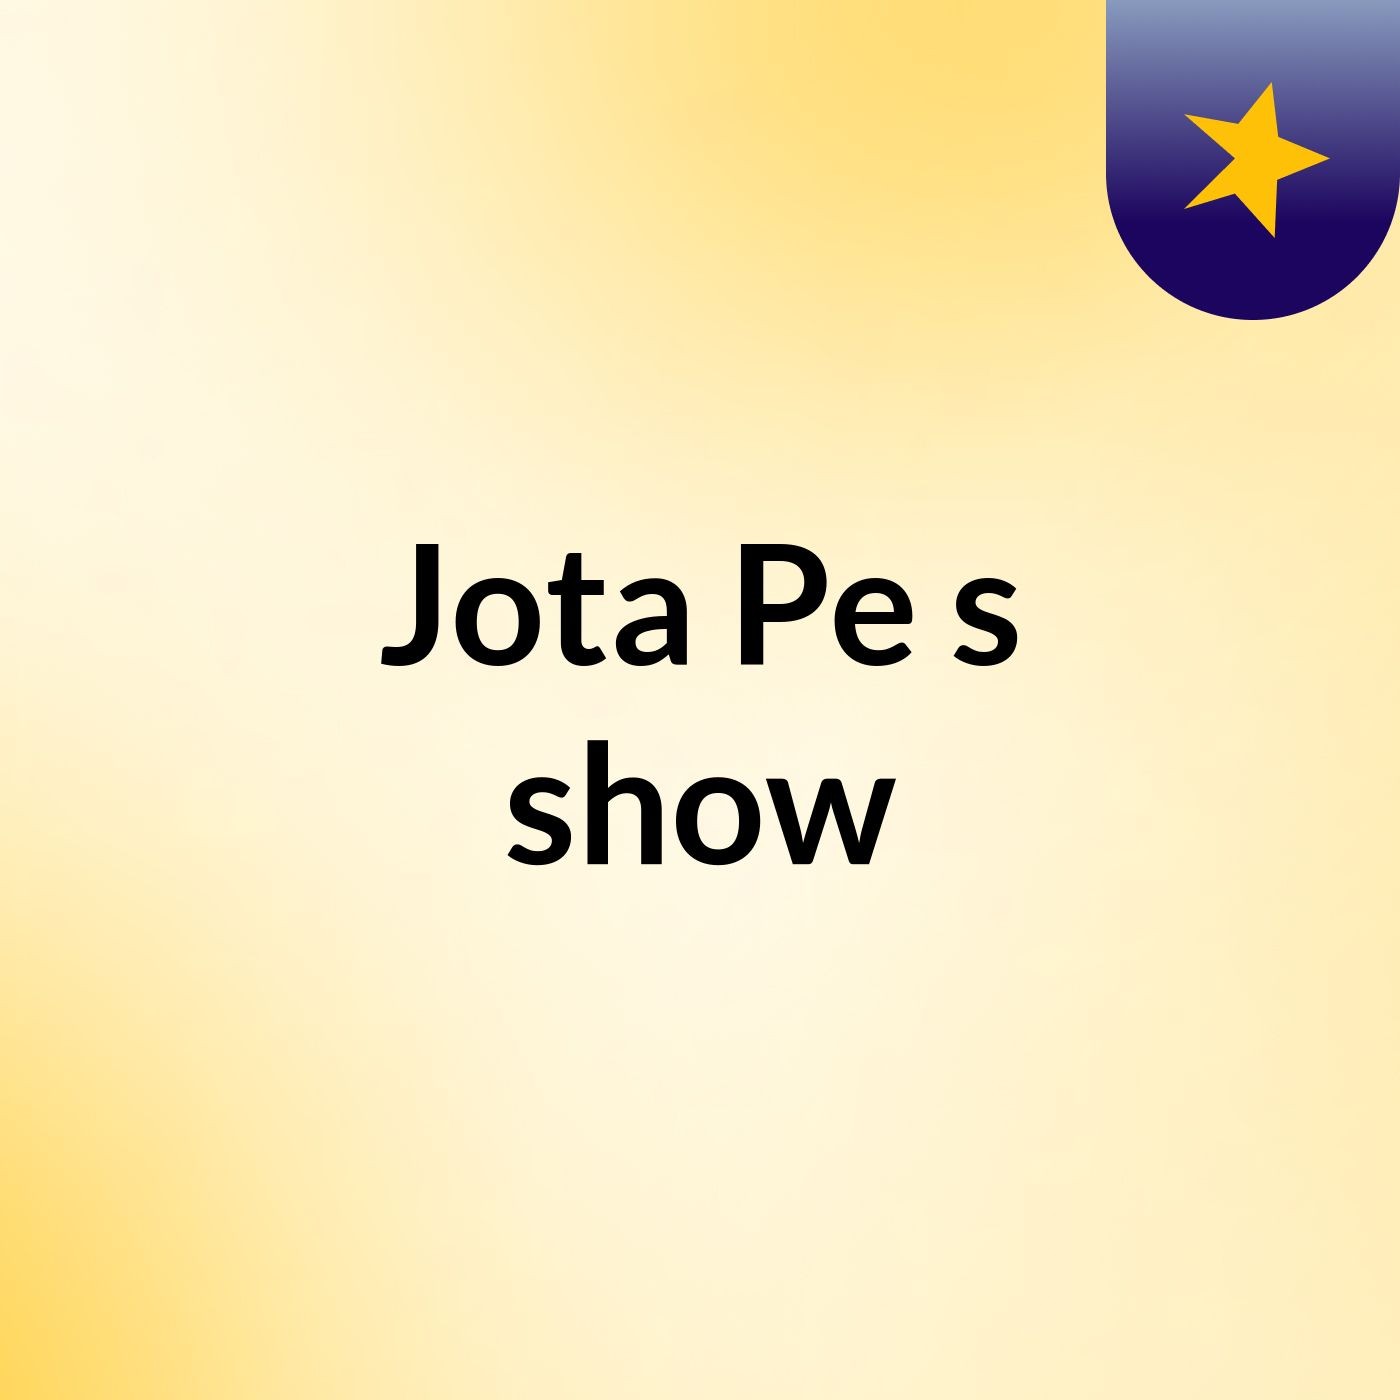 Jota Pe's show